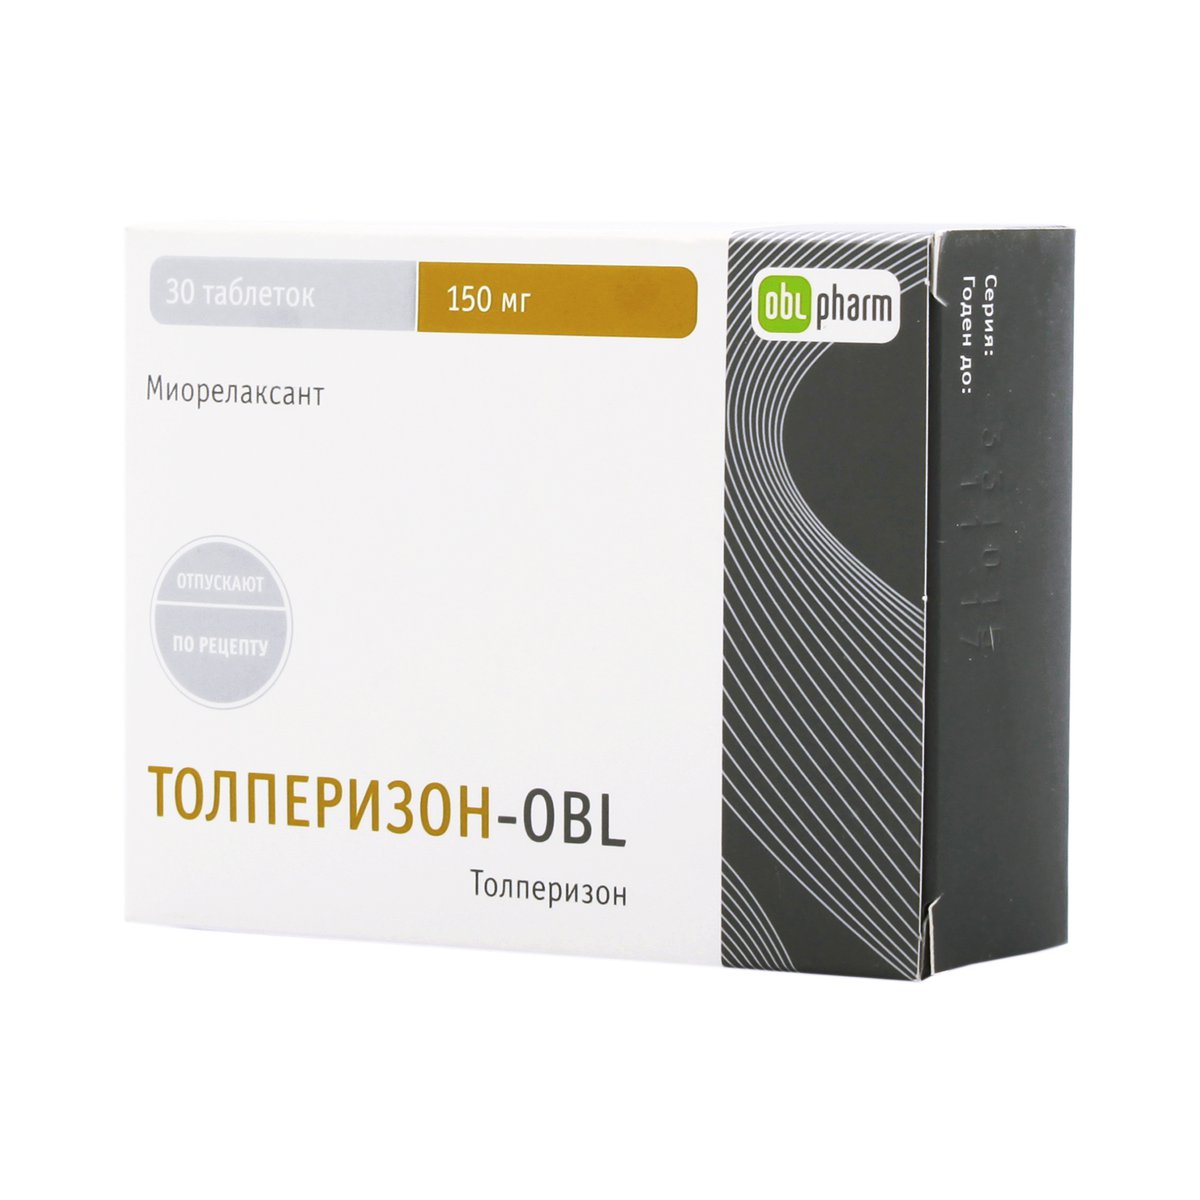 Толперизон-obl (таблетки, 30 шт, 150 мг) - цена,  онлайн  .